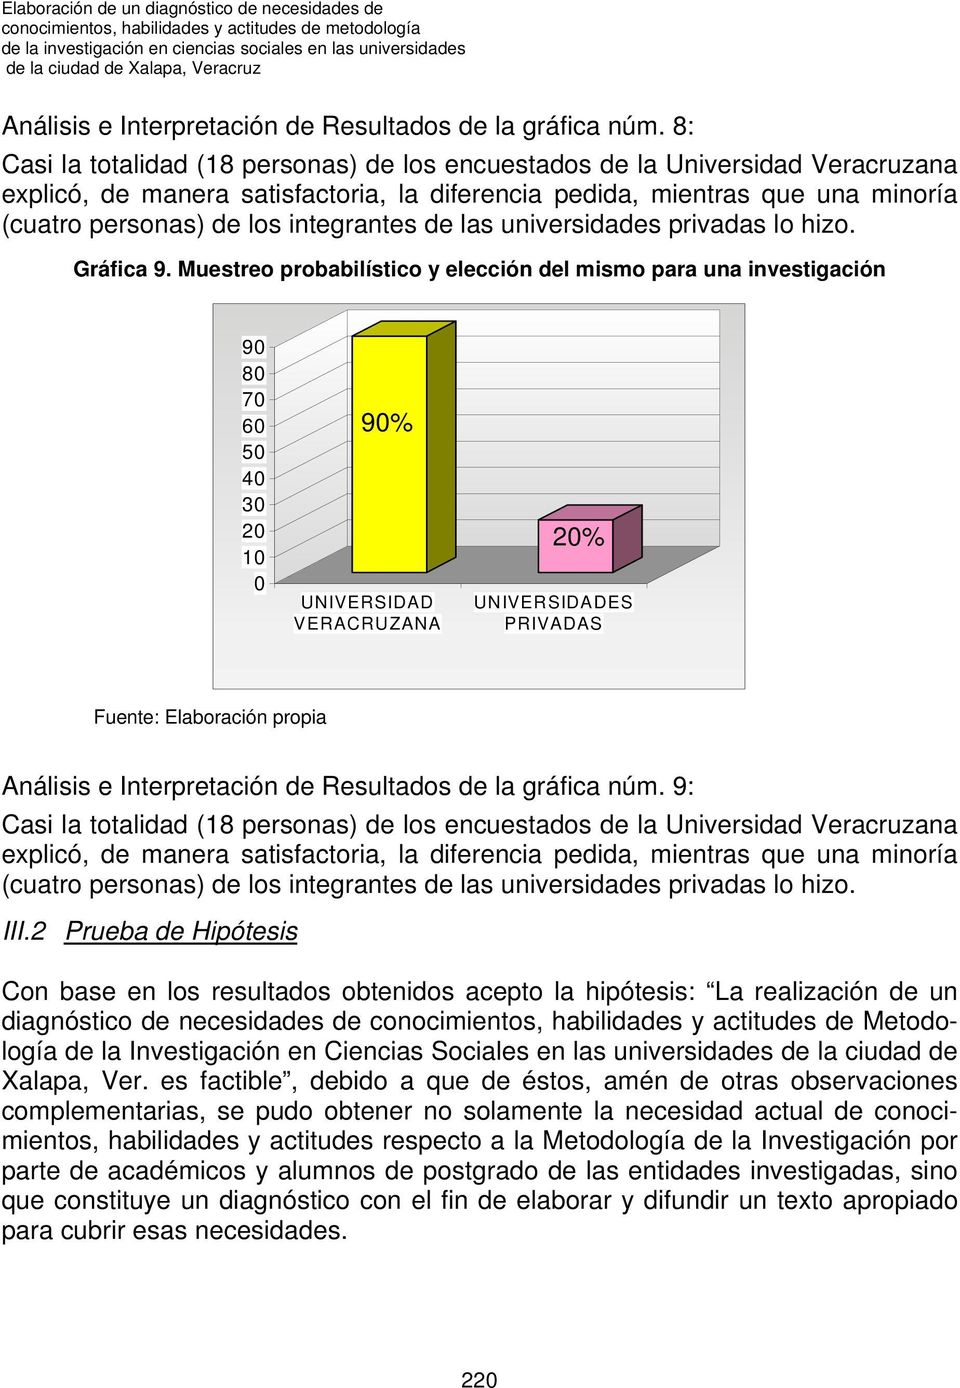 8: Casi la totalidad (18 personas) de los encuestados de la Universidad Veracruzana explicó, de manera satisfactoria, la diferencia pedida, mientras que una minoría (cuatro personas) de los